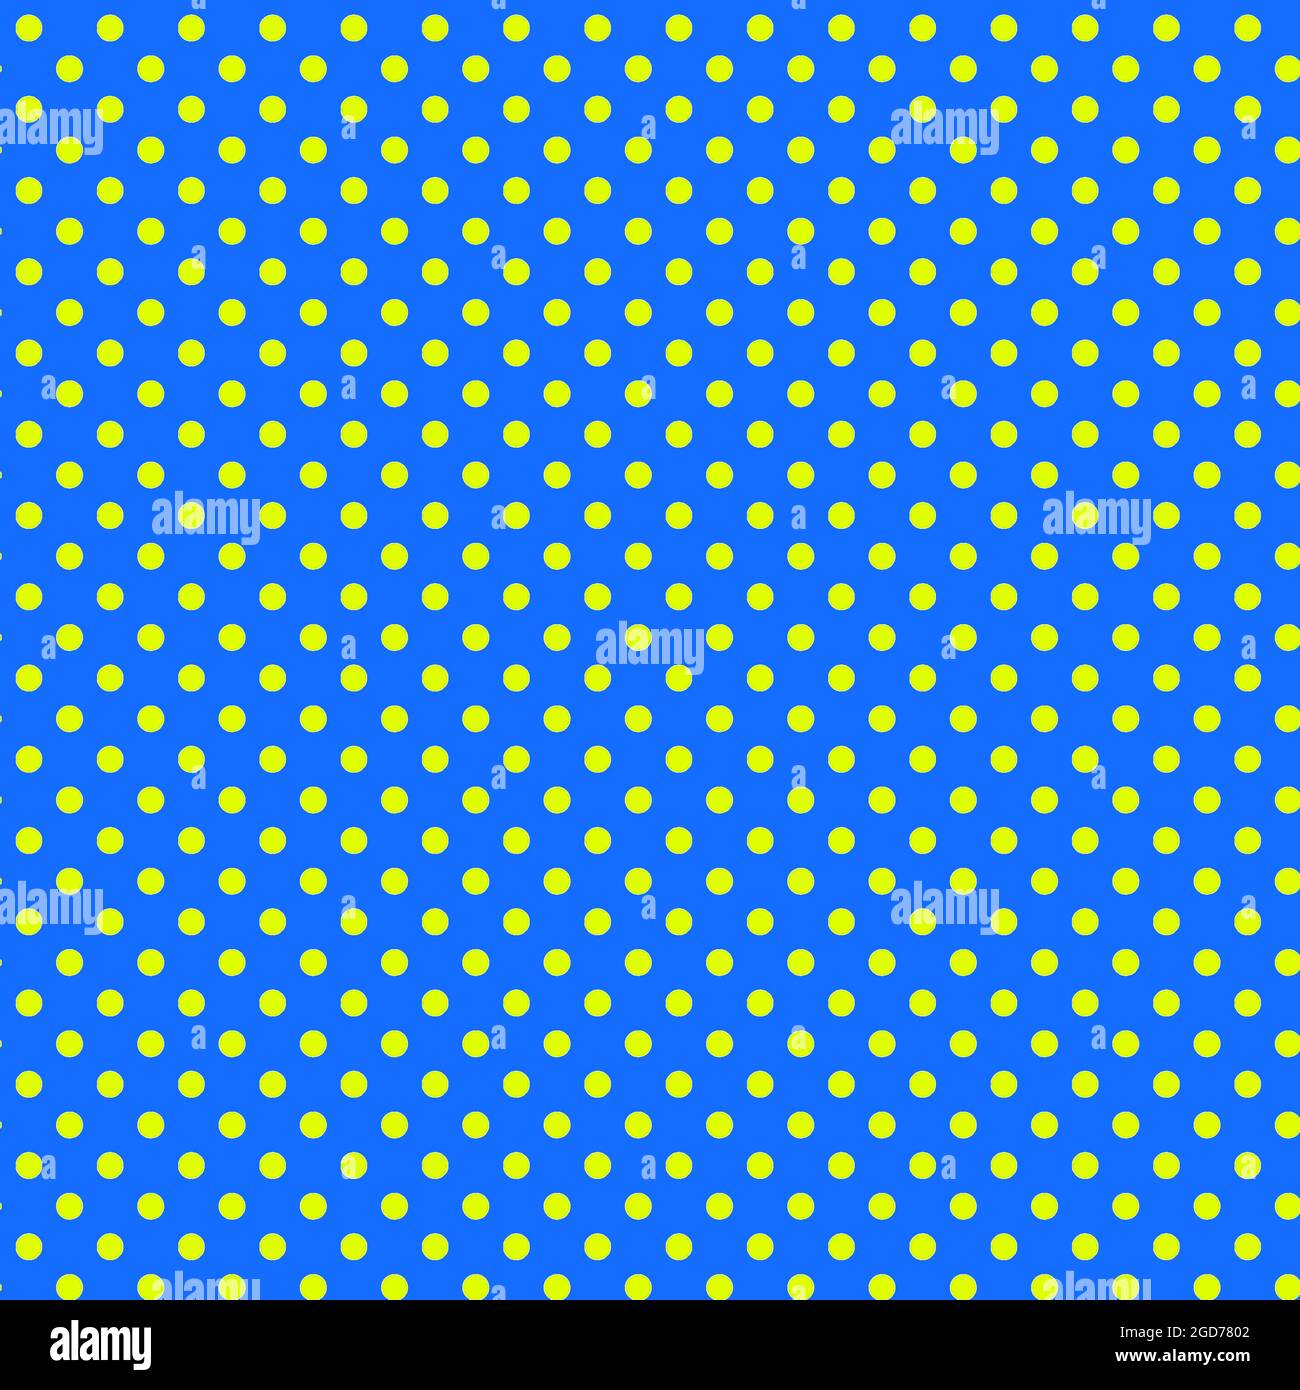 Chartreuse et toile de fond à pois bleus sur fond bleu. papier numérique 12x12 pour la conception graphique, les textures, les petits cercles géométriques backdrops. Banque D'Images